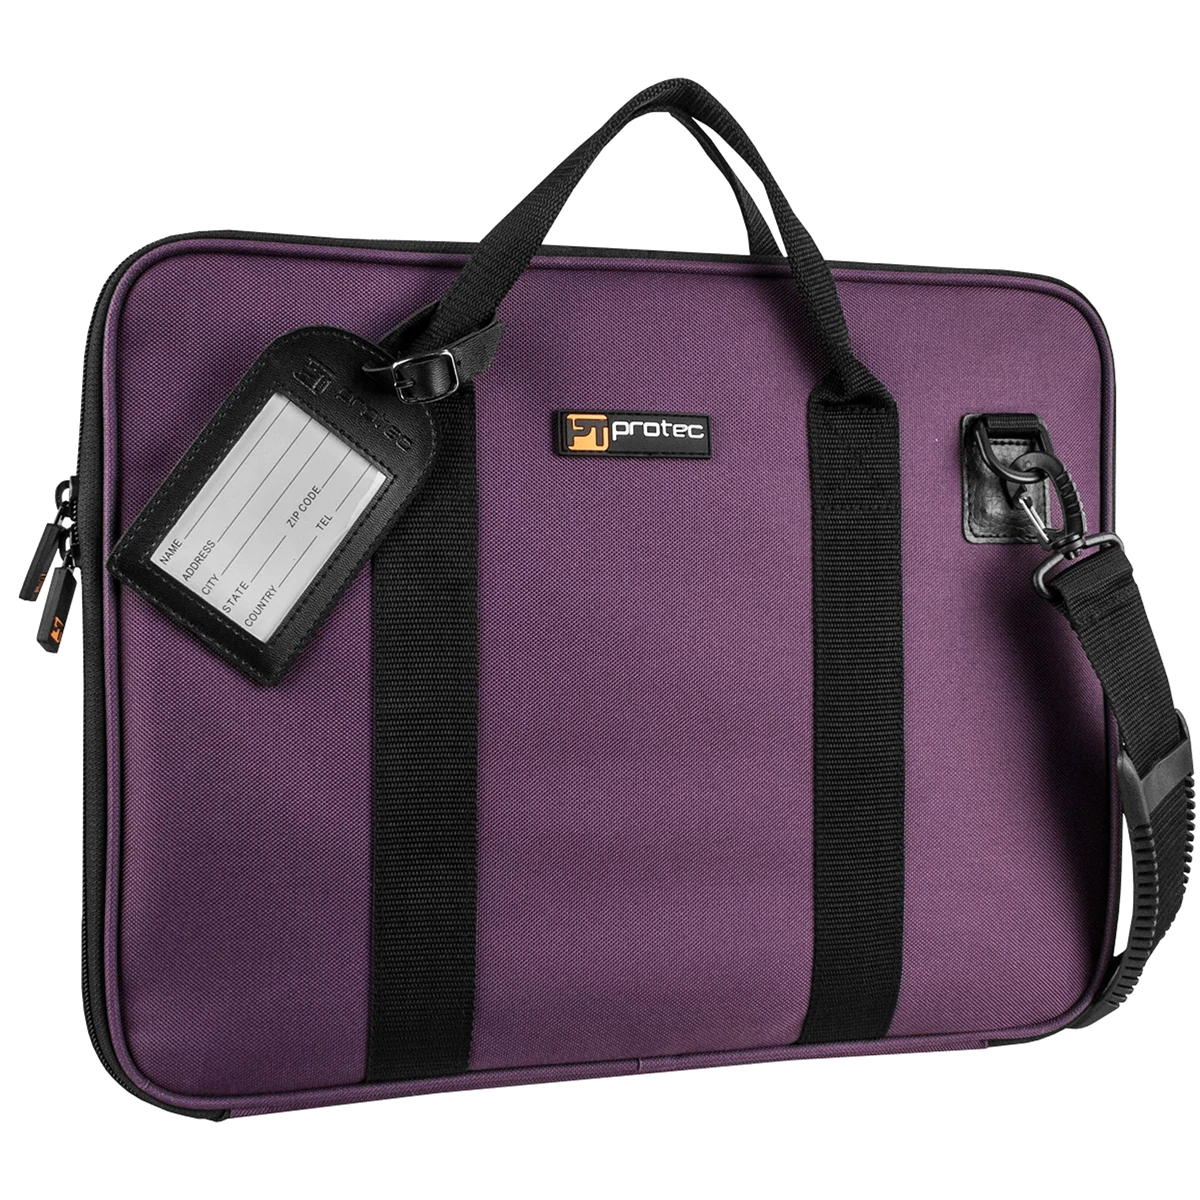 Dash portfolio bag for men: Premium leather office laptop bag - Paul Adams